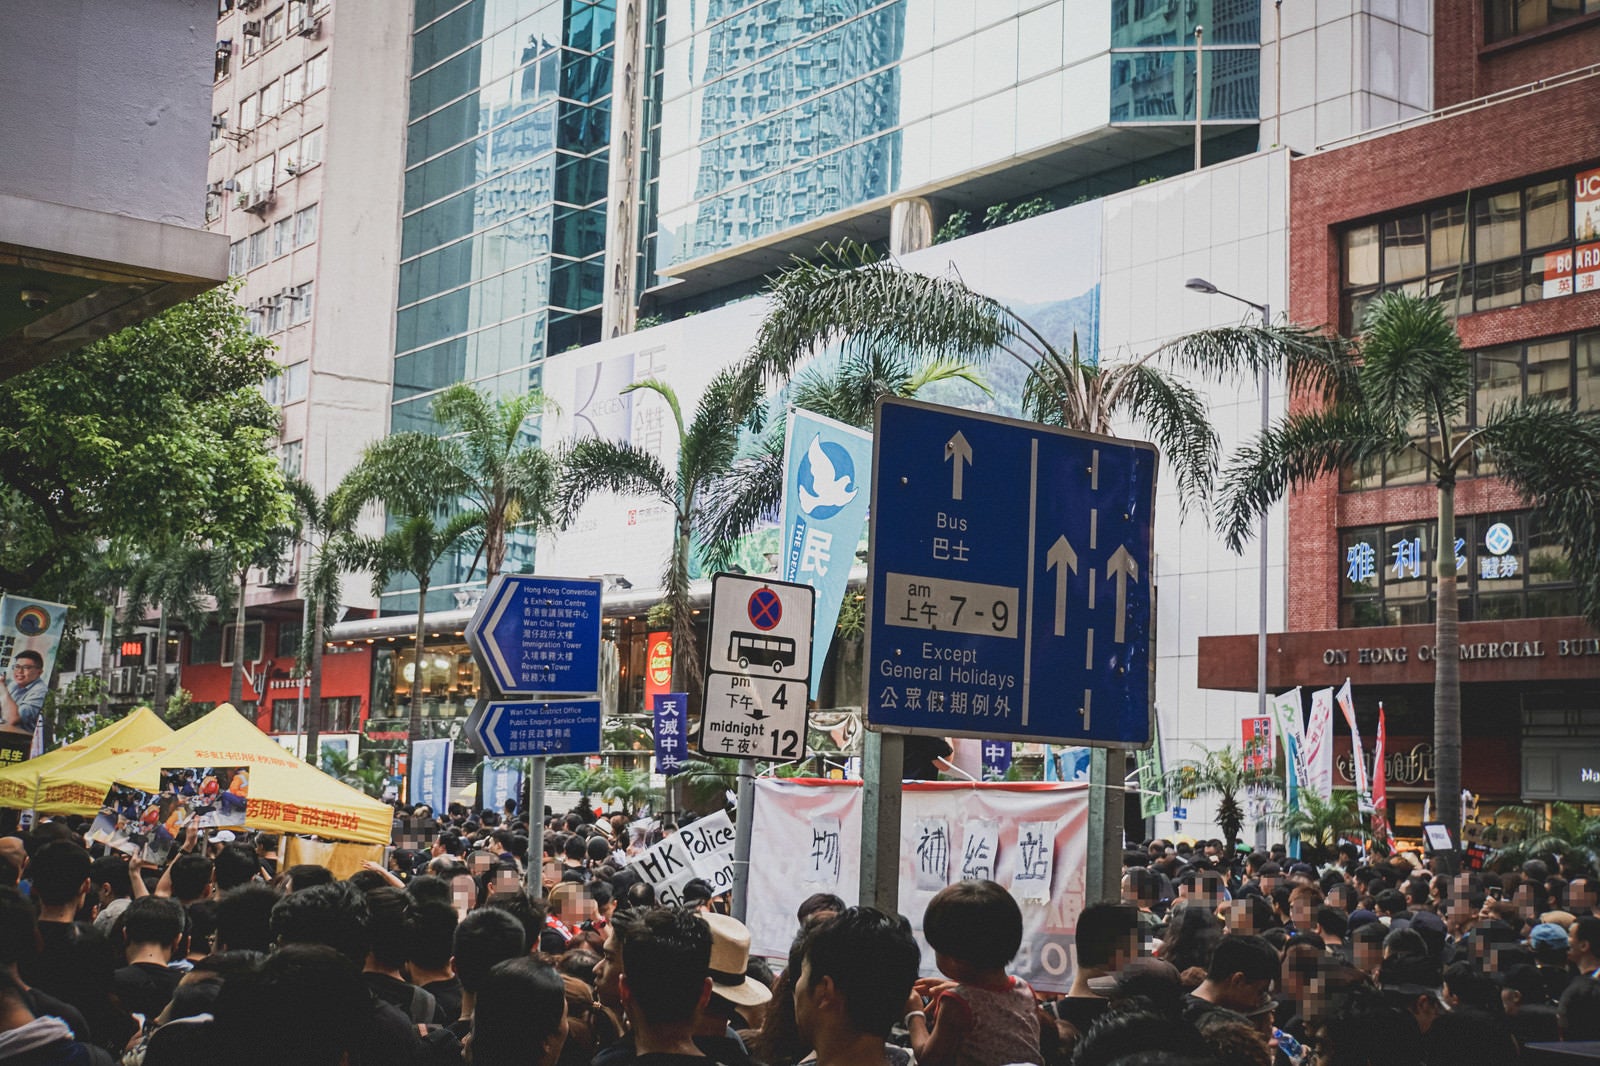 「人であふれる香港反送中デモの様子」の写真